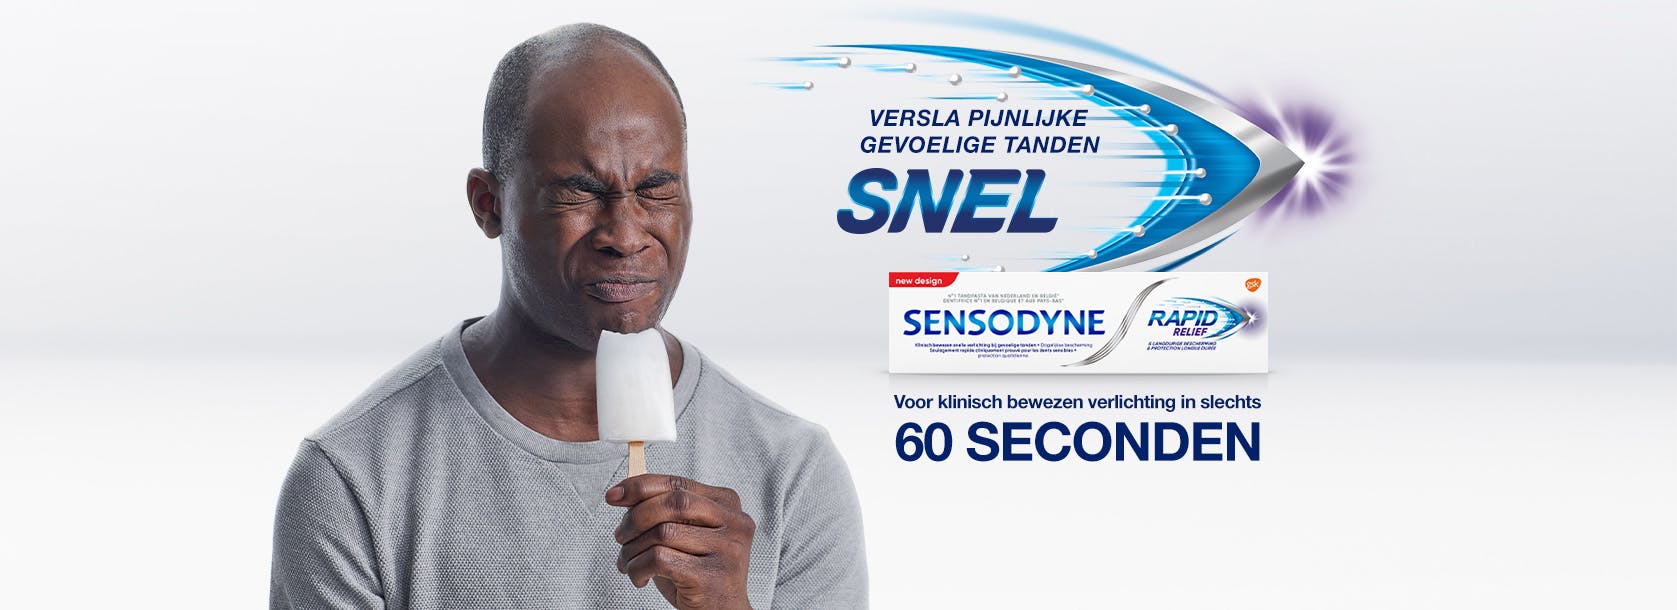 Sensodyne Rapid Relief banner met man die ijs eet en gevoelige tanden ervaart. Breder